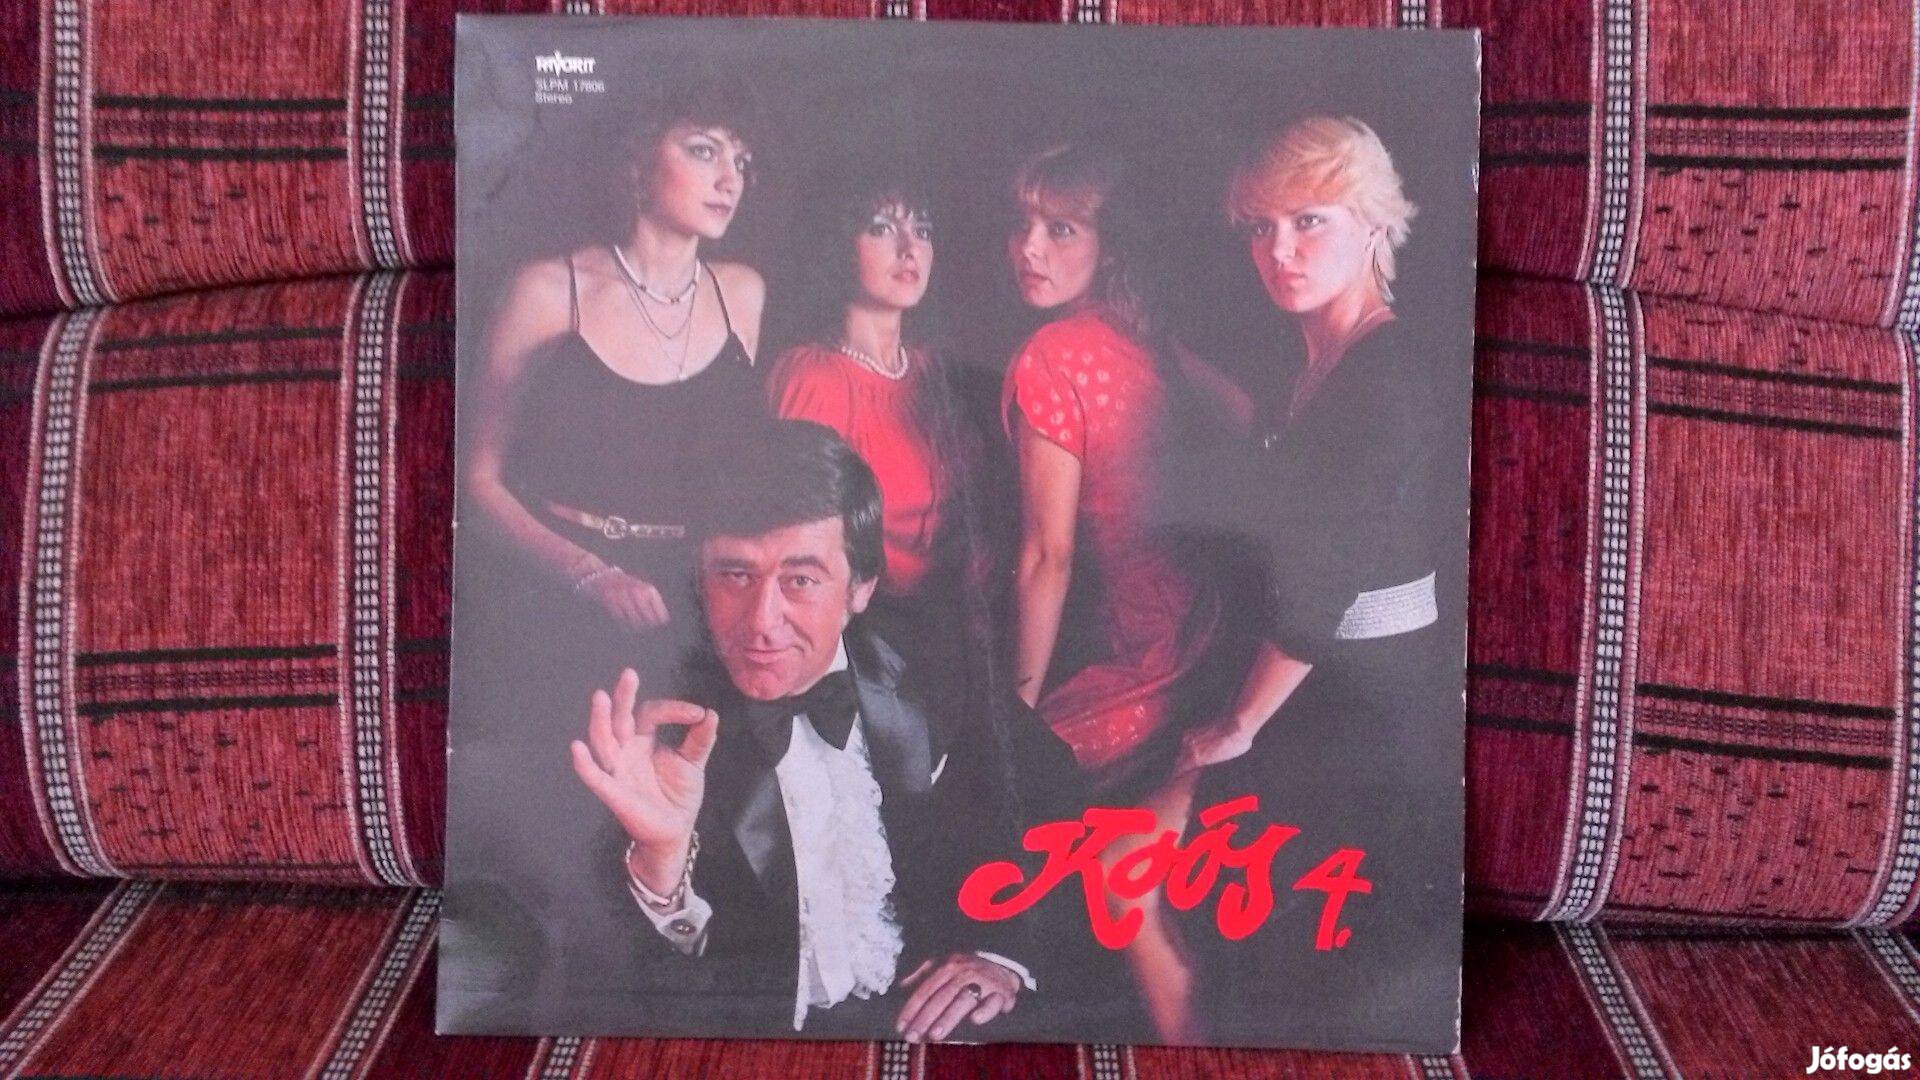 Koós János - 4. nagylemeze hanglemez bakelit lemez Vinyl